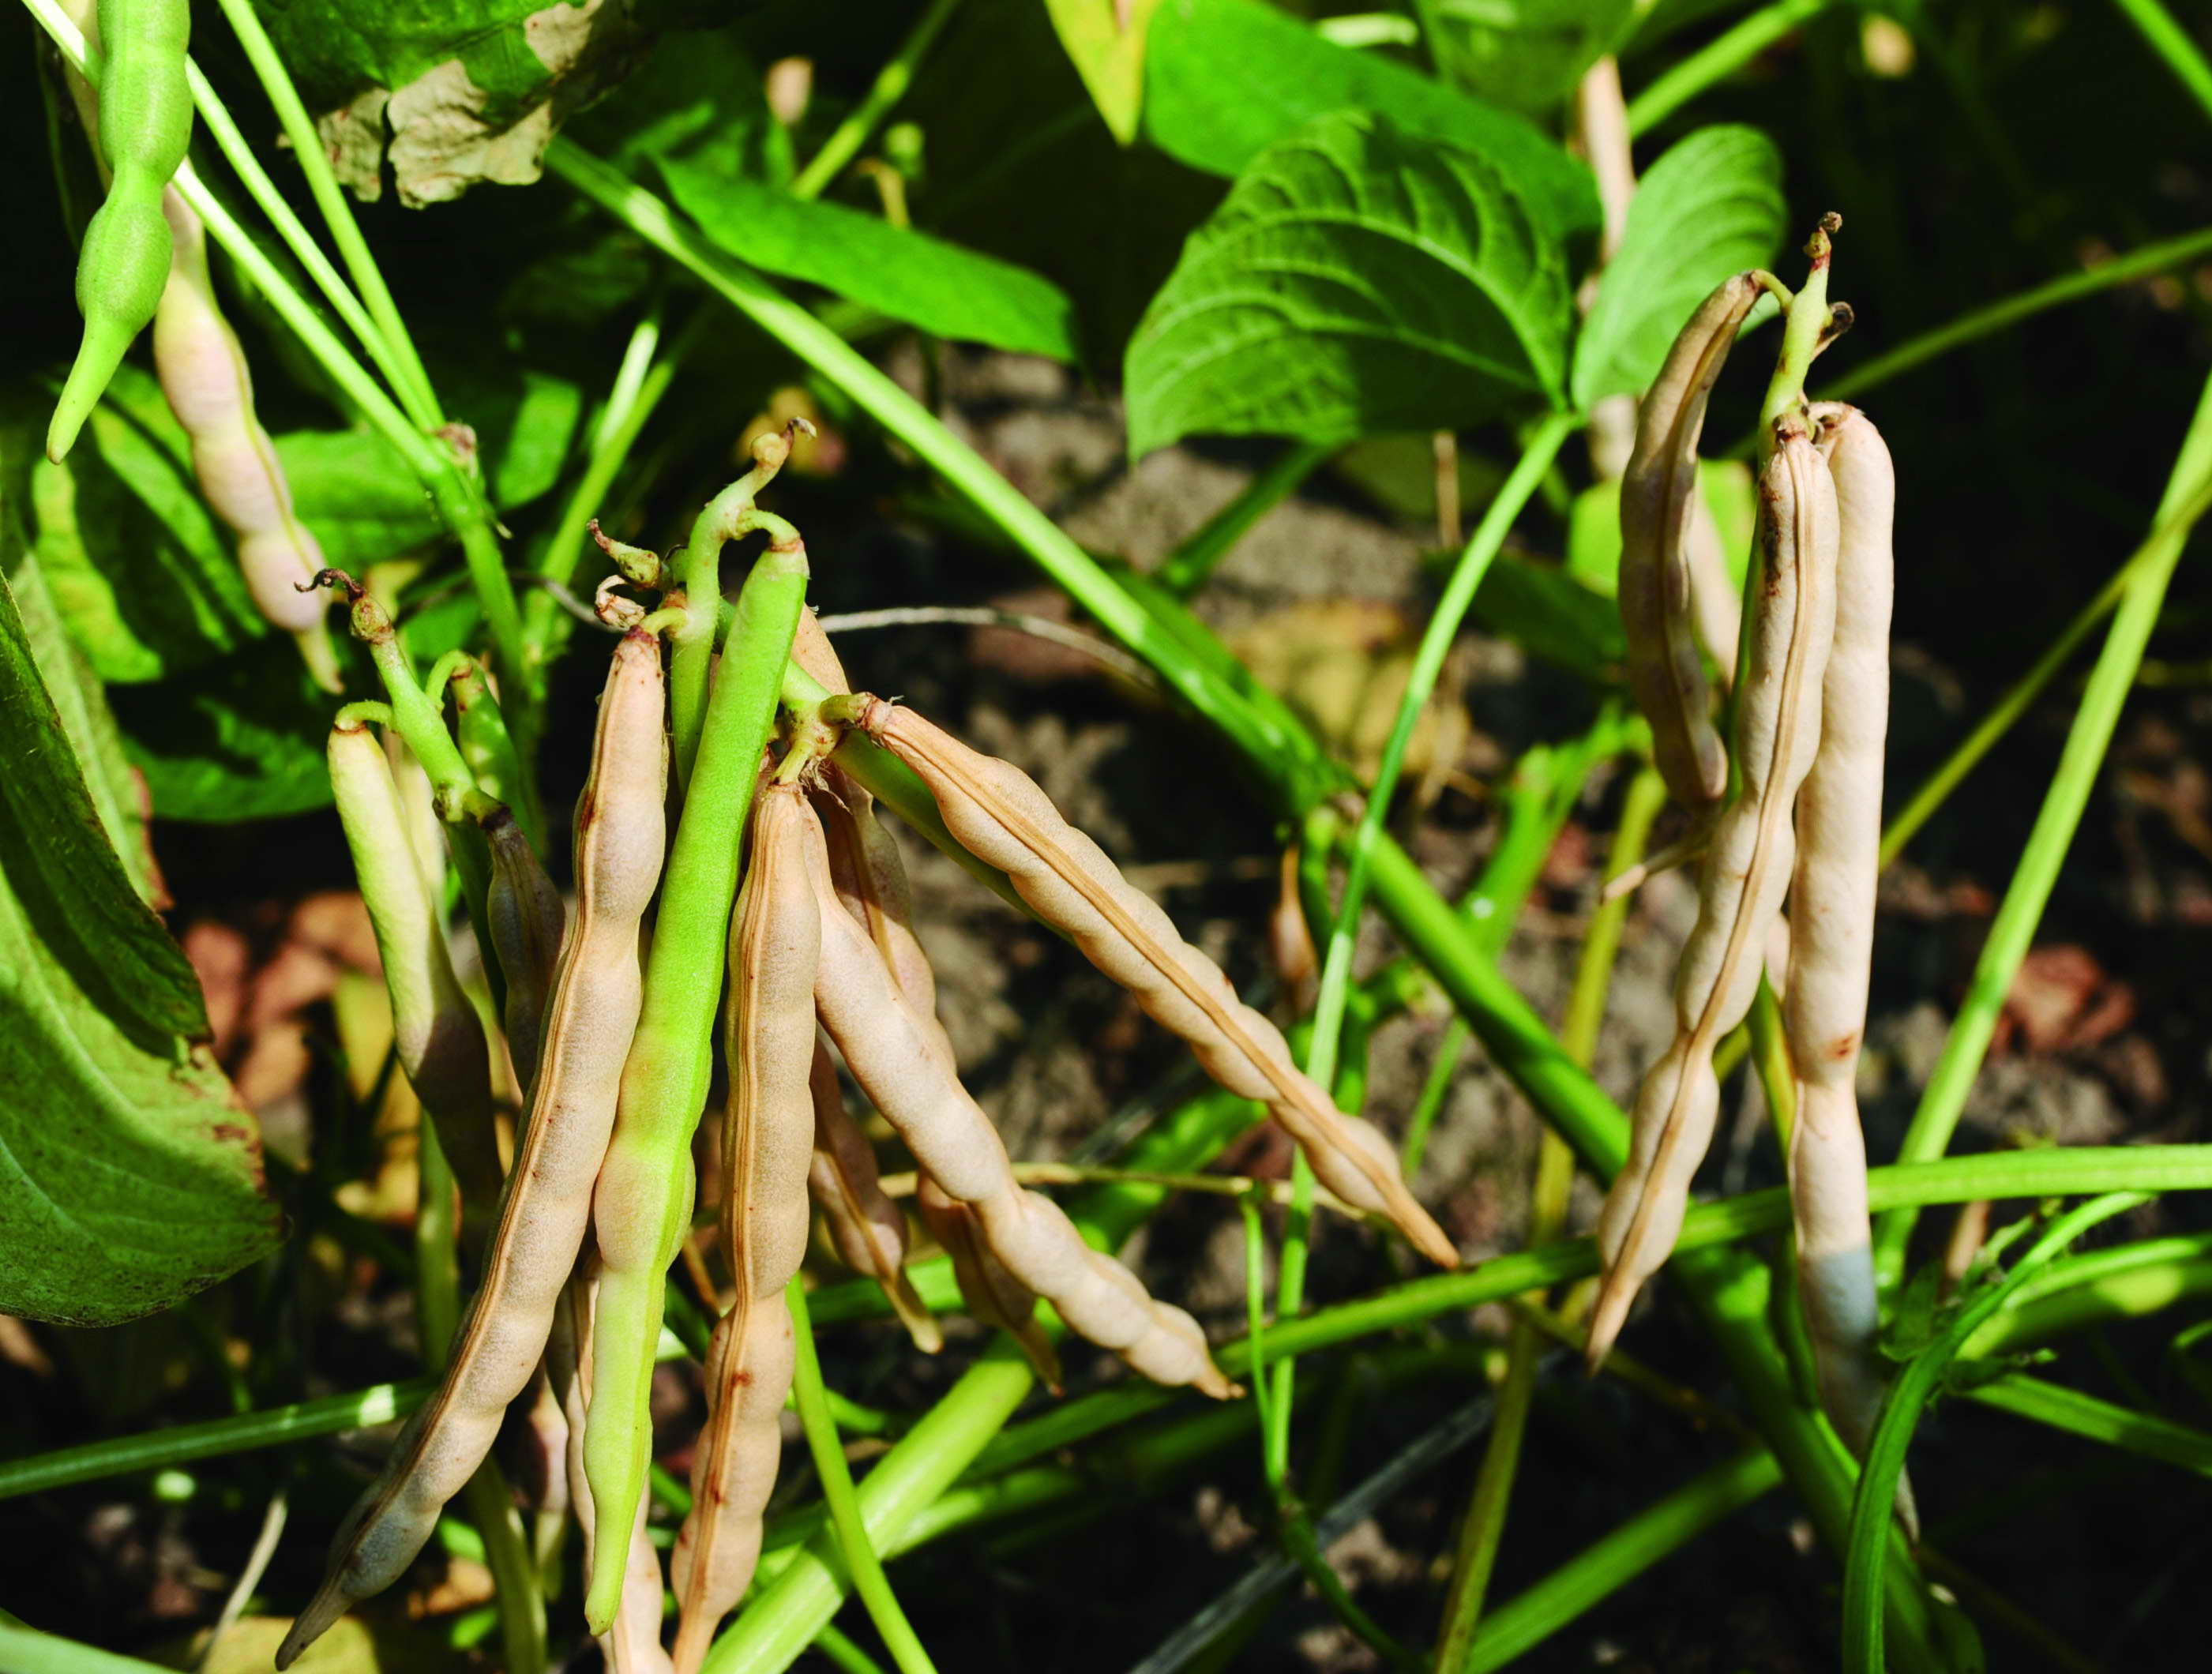 紅豆生長第76天  Red beans which have been growing for 76 days.